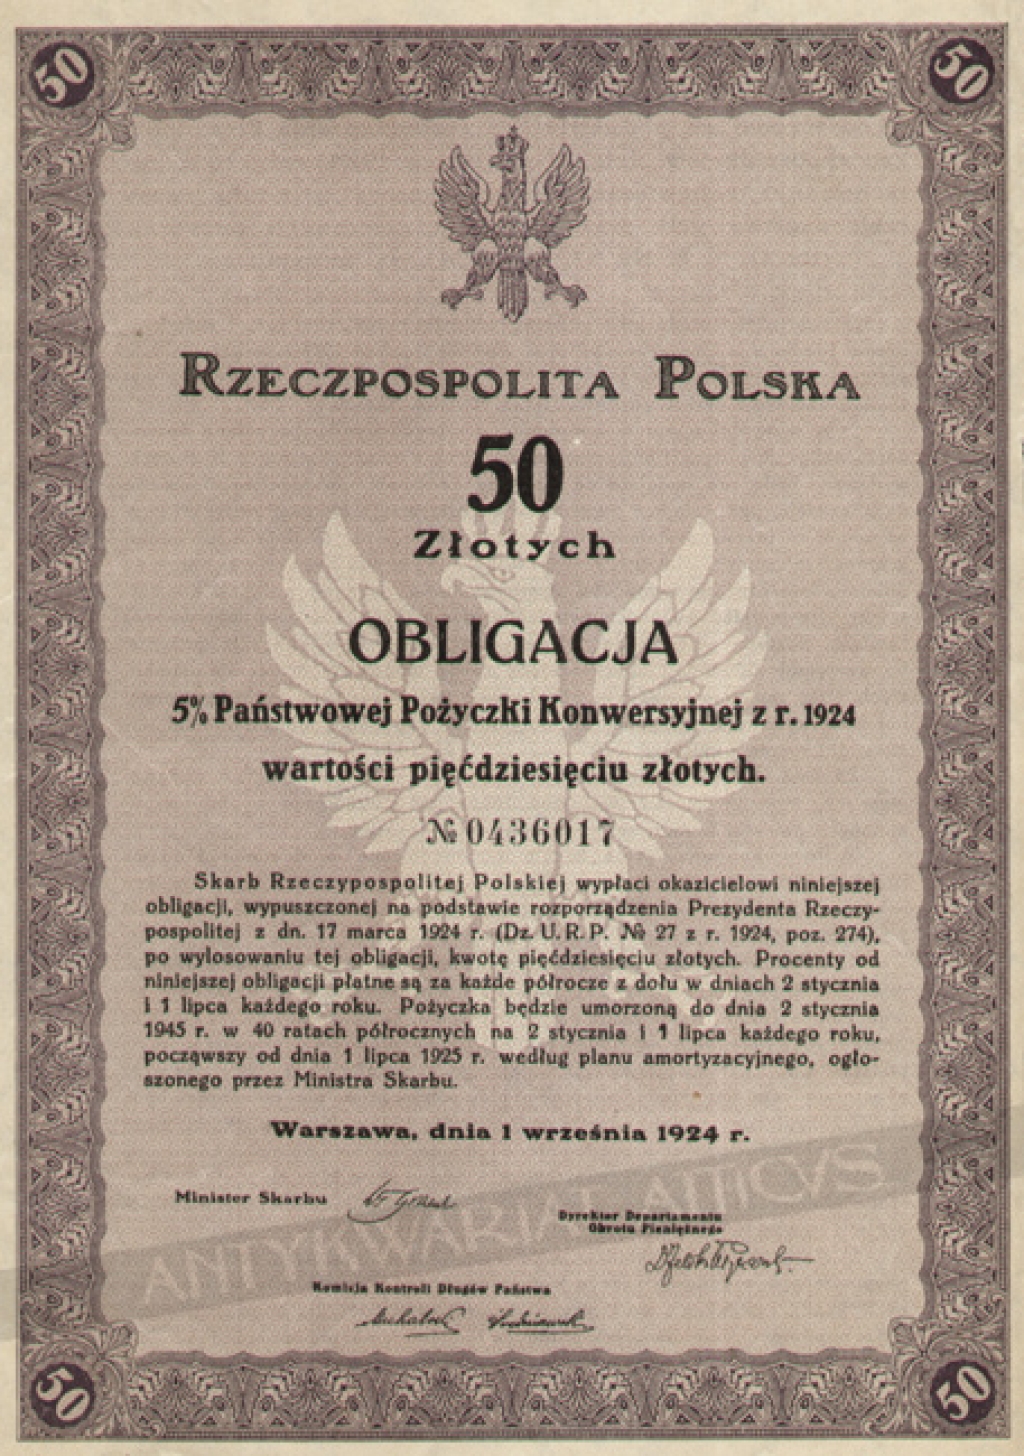 [obligacja, 1924] Rzeczpospolita Polska. Obligacja 5% Państwowej Pożyczki Konwersyjnej z r. 1924 wartości pięćdziesięciu złotych